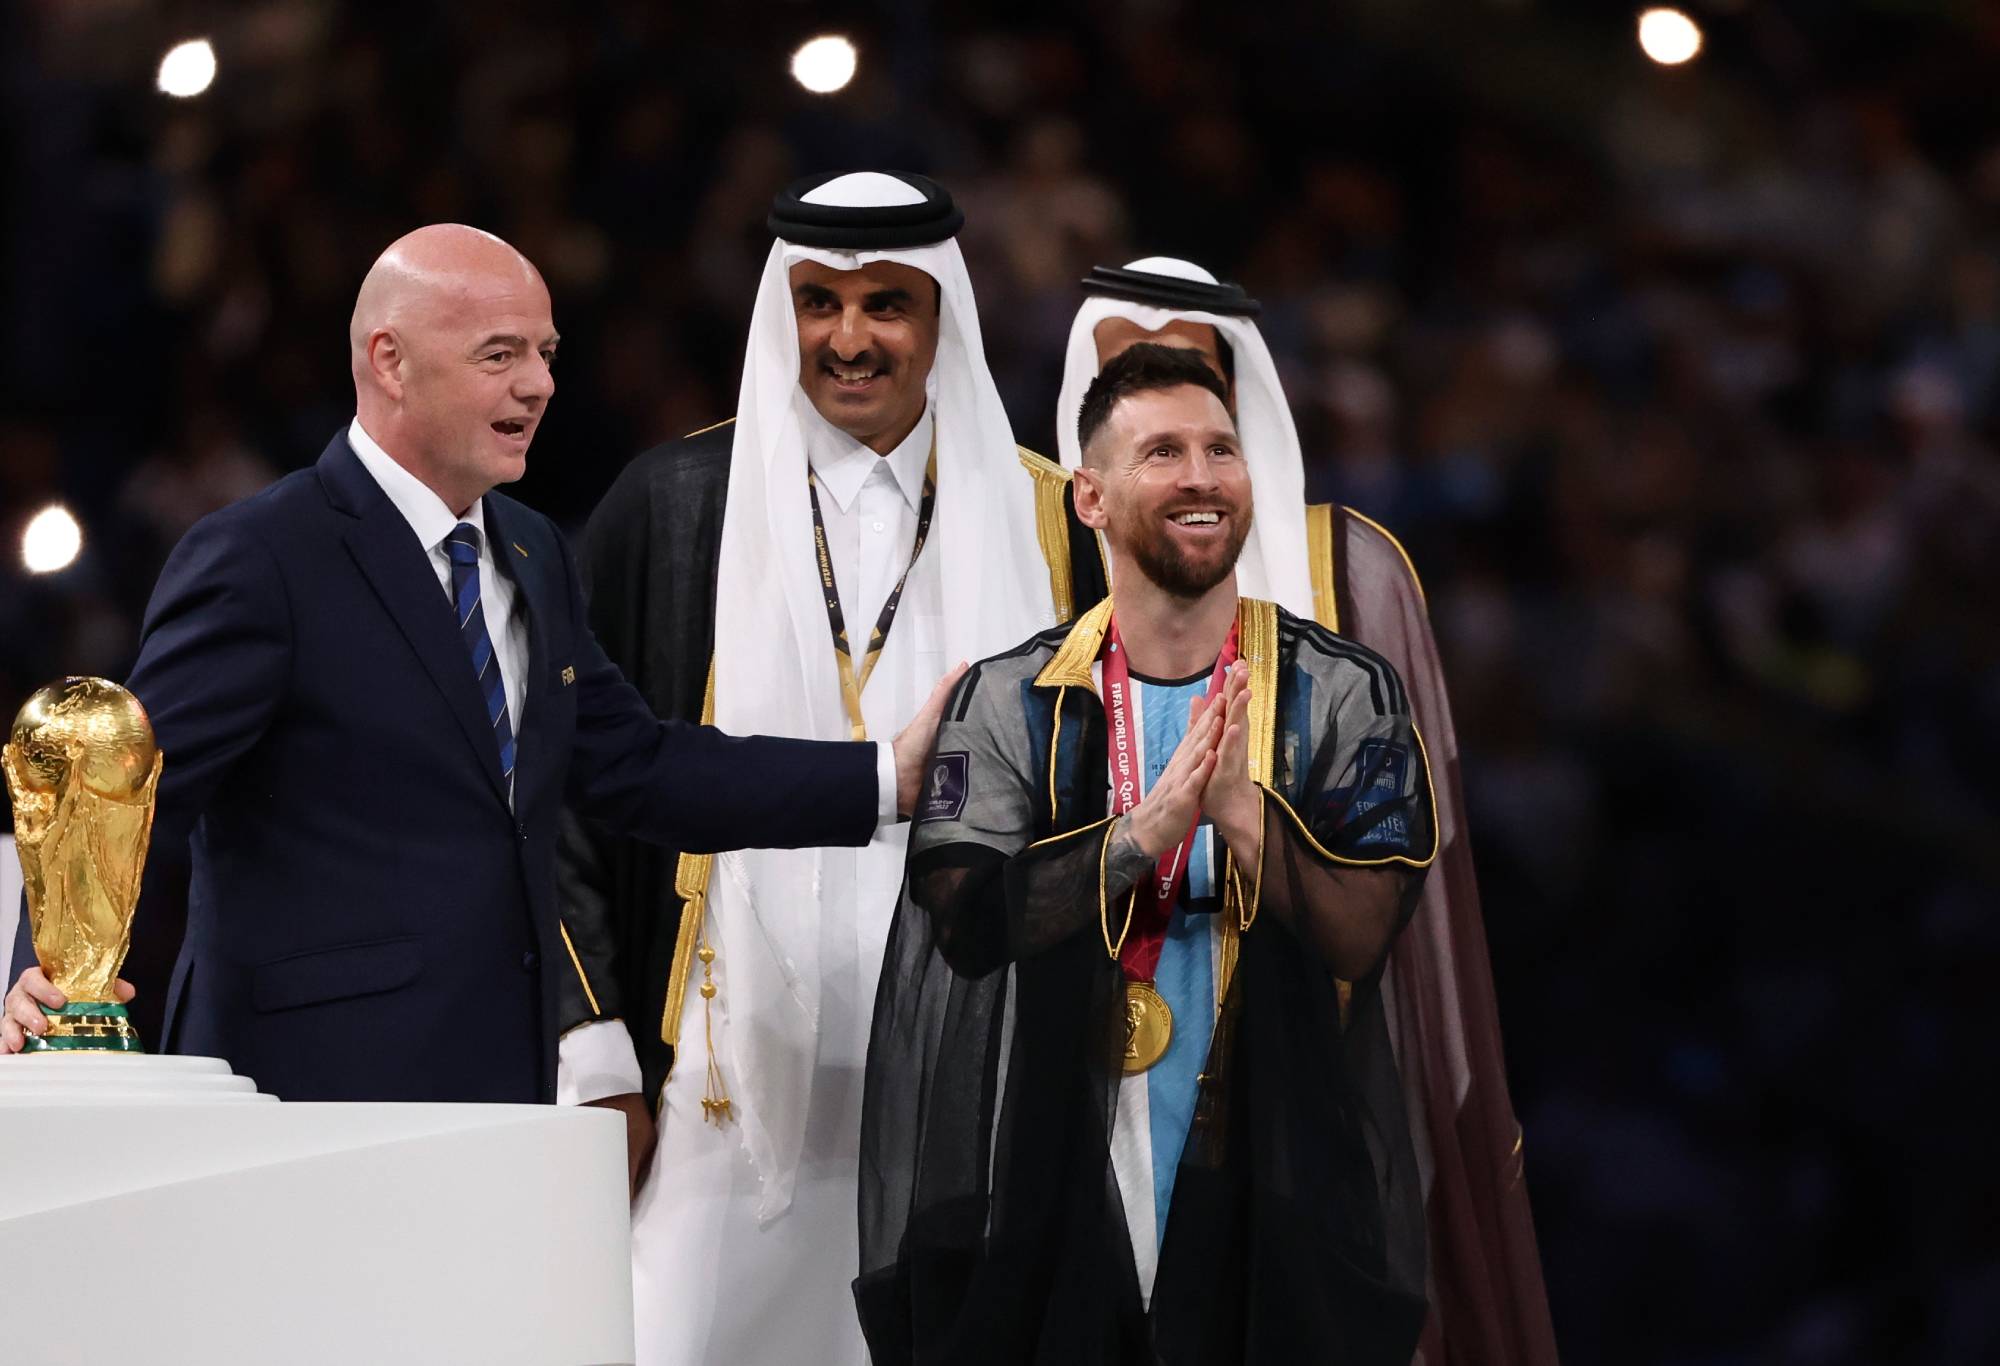 Messi menerima tawaran besar-besaran untuk menjual jubah Arab dari upacara trofi Piala Dunia